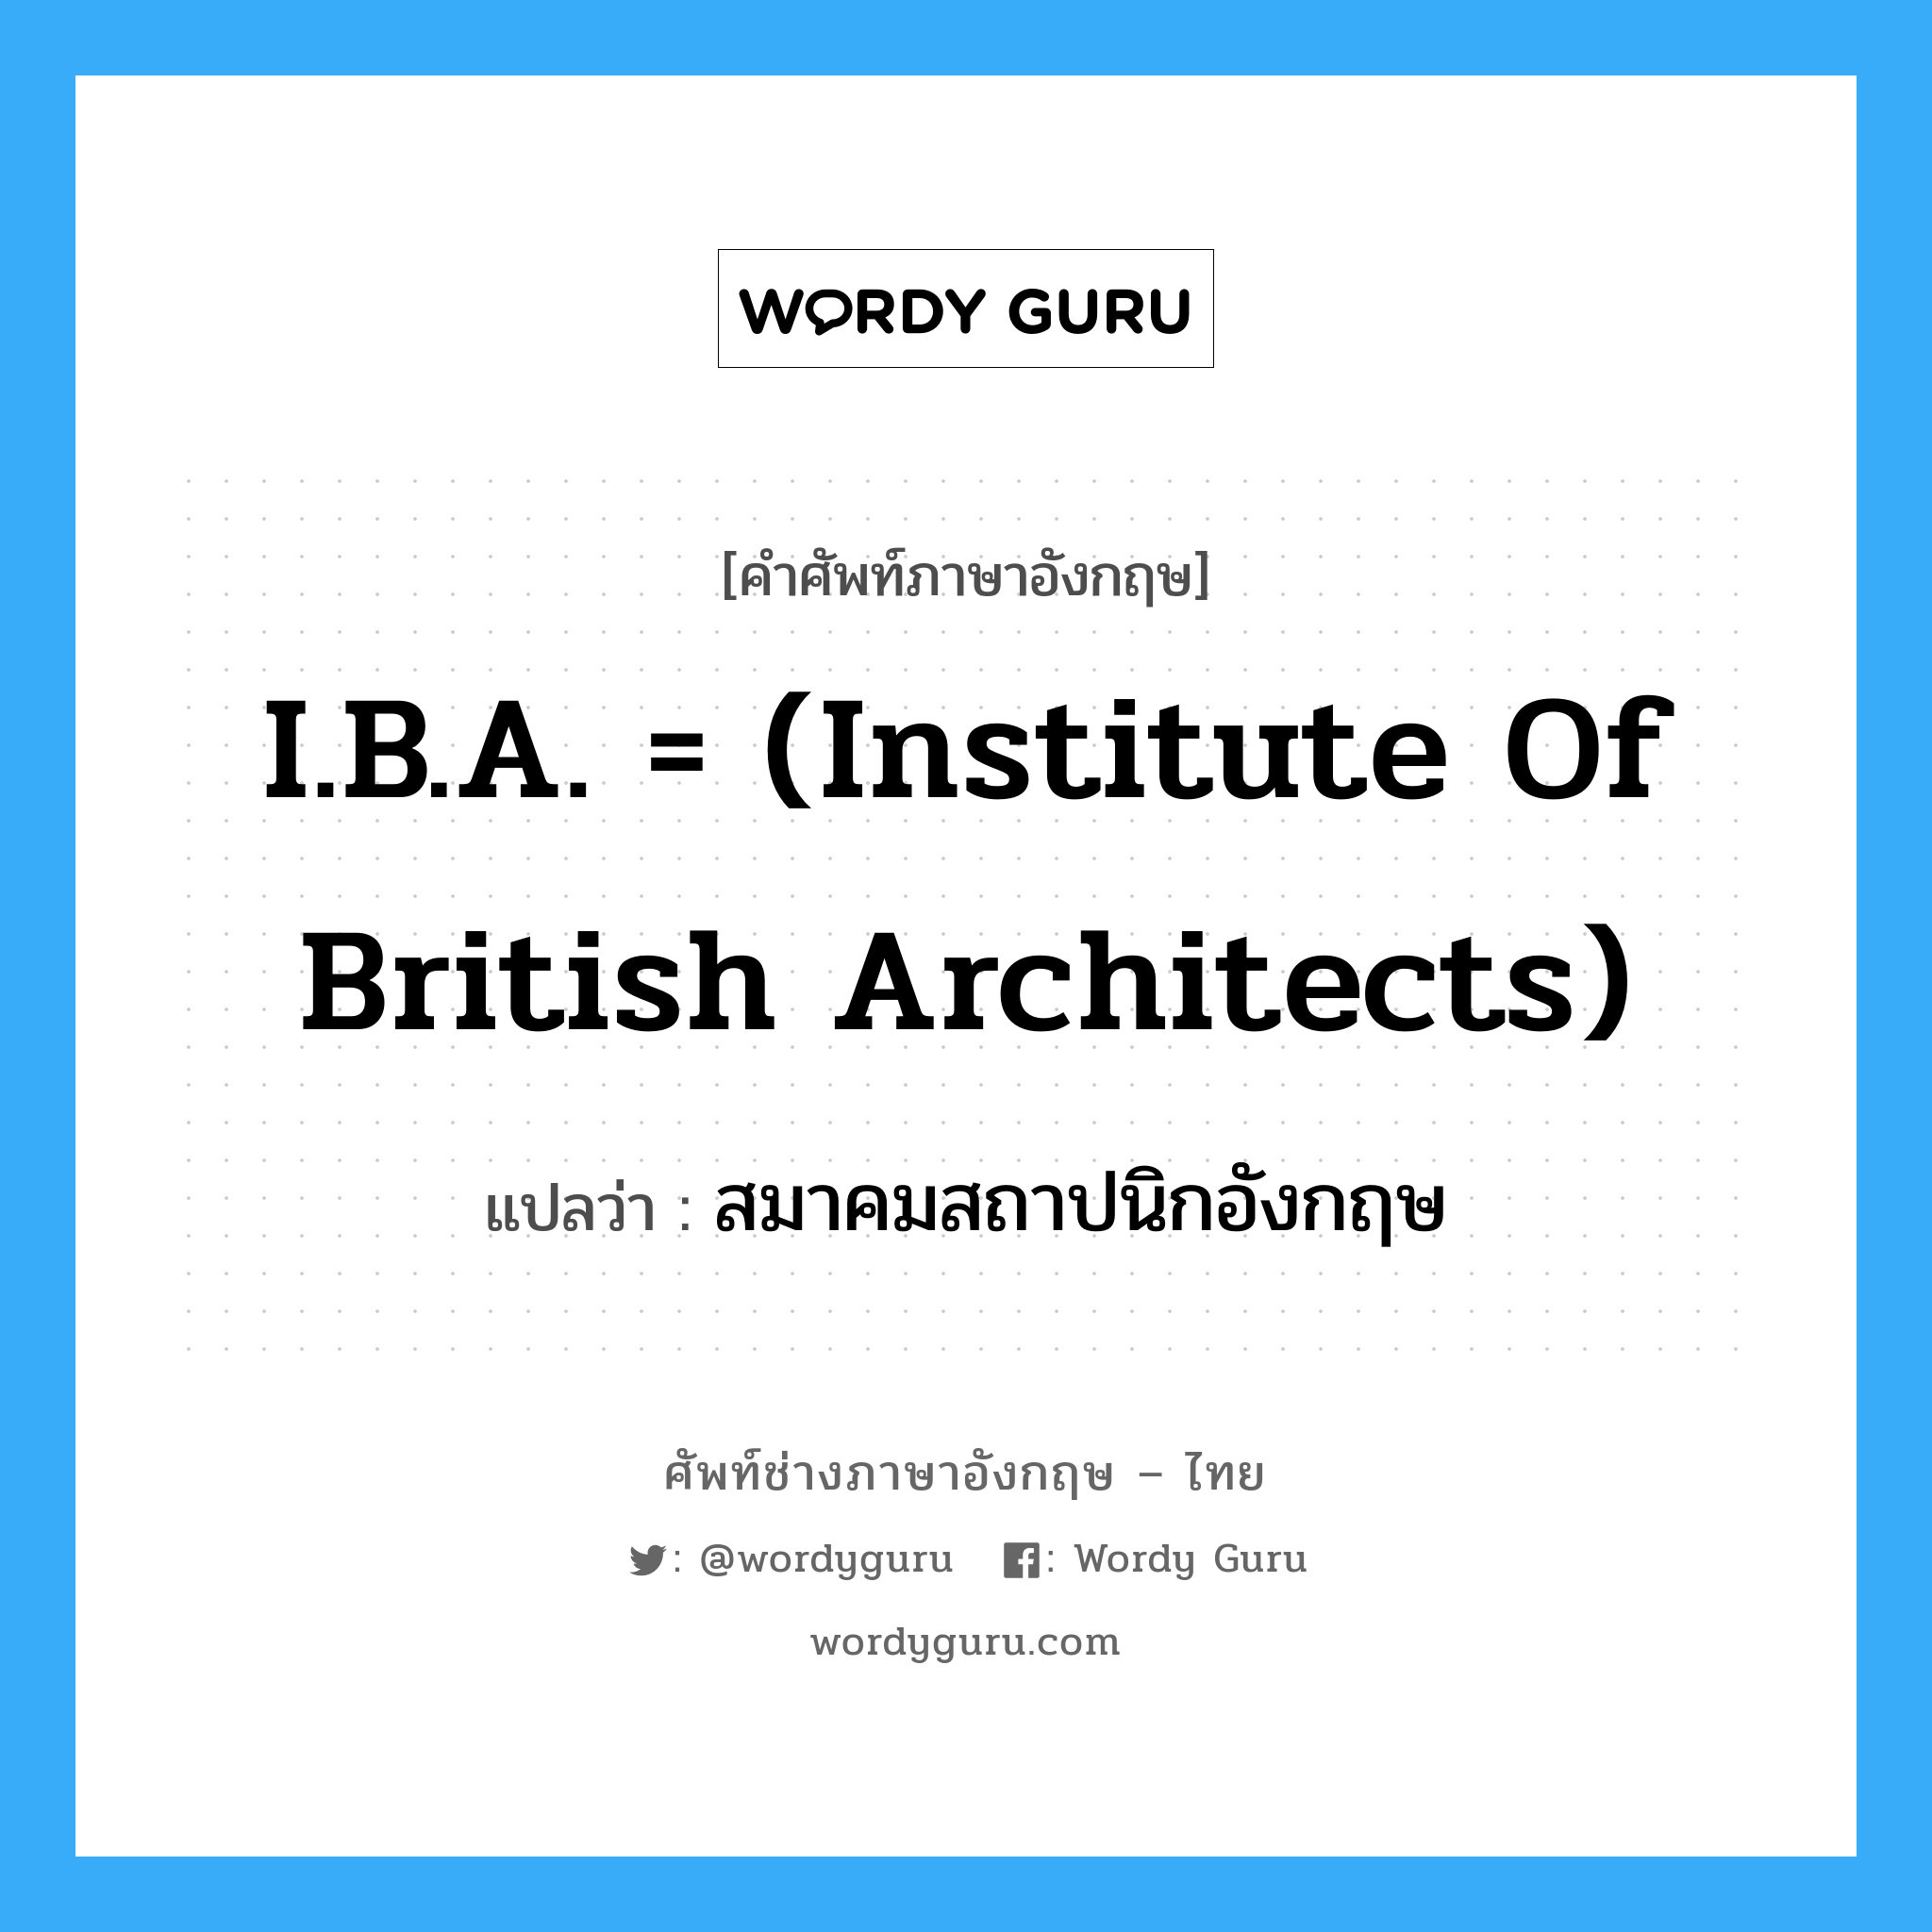 สมาคมสถาปนิกอังกฤษ ภาษาอังกฤษ?, คำศัพท์ช่างภาษาอังกฤษ - ไทย สมาคมสถาปนิกอังกฤษ คำศัพท์ภาษาอังกฤษ สมาคมสถาปนิกอังกฤษ แปลว่า I.B.A. = (Institute of British Architects)